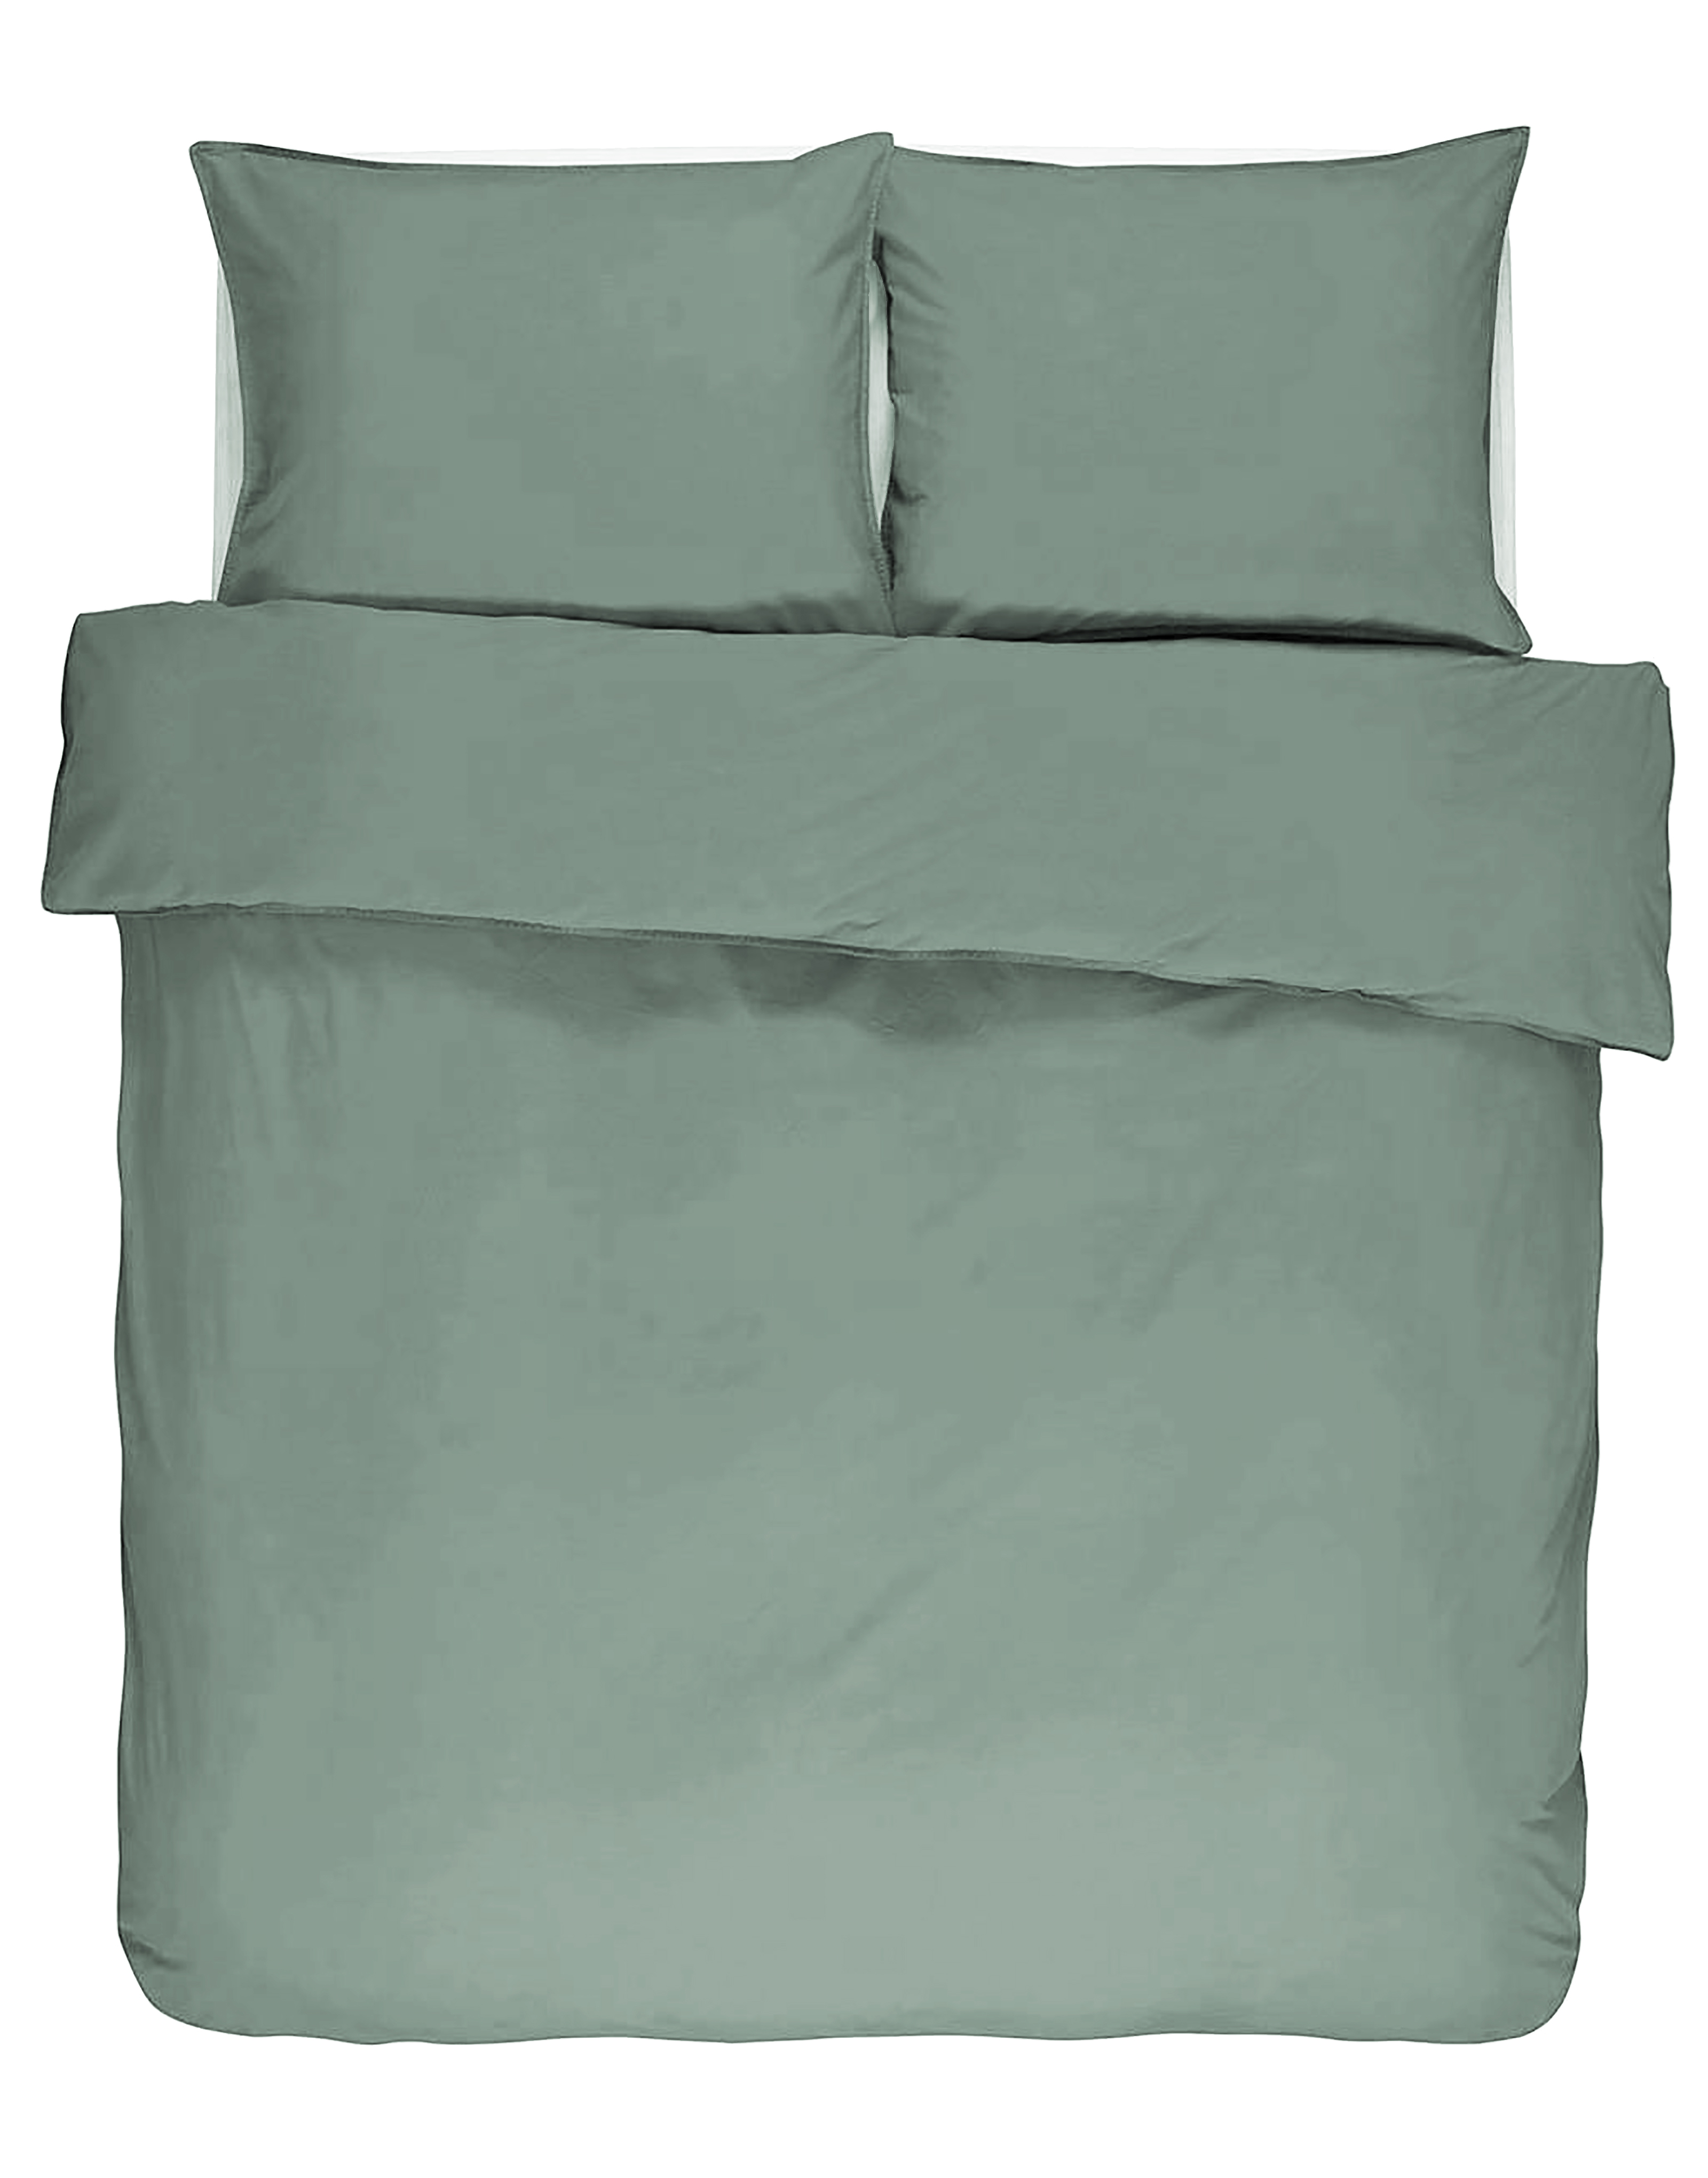 Housse de couette  IRIS, Stone washed uni coton, 240x220, vert